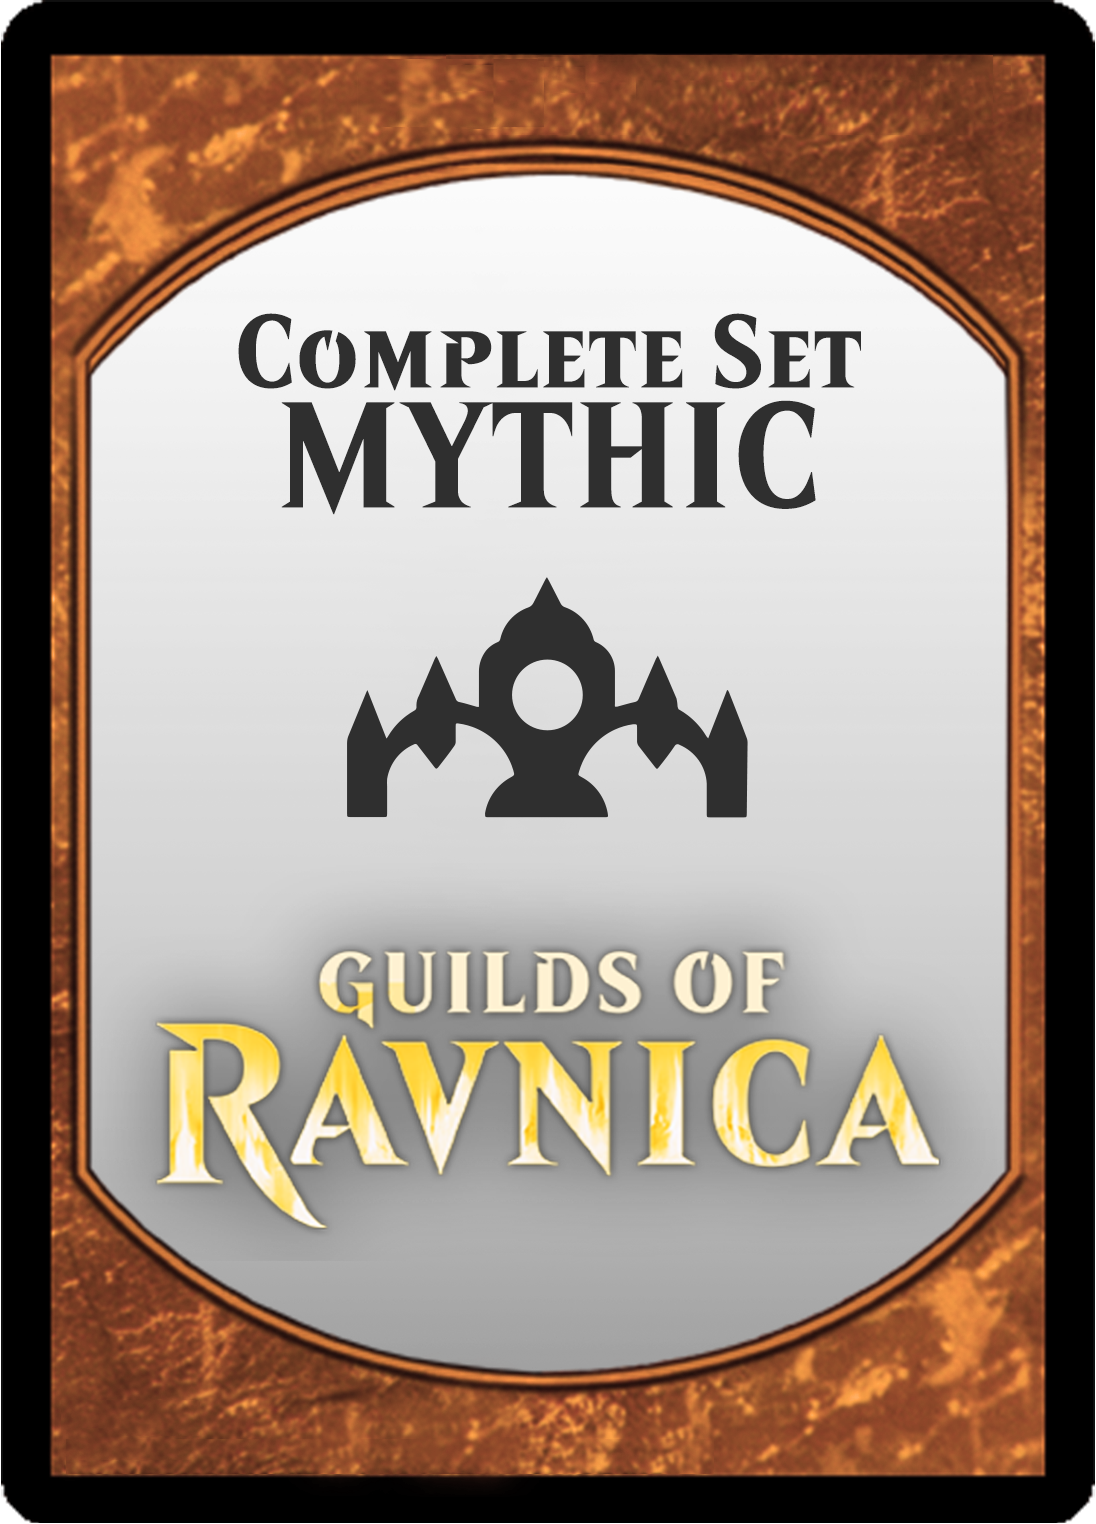 Guilds of Ravnica Mythic Set